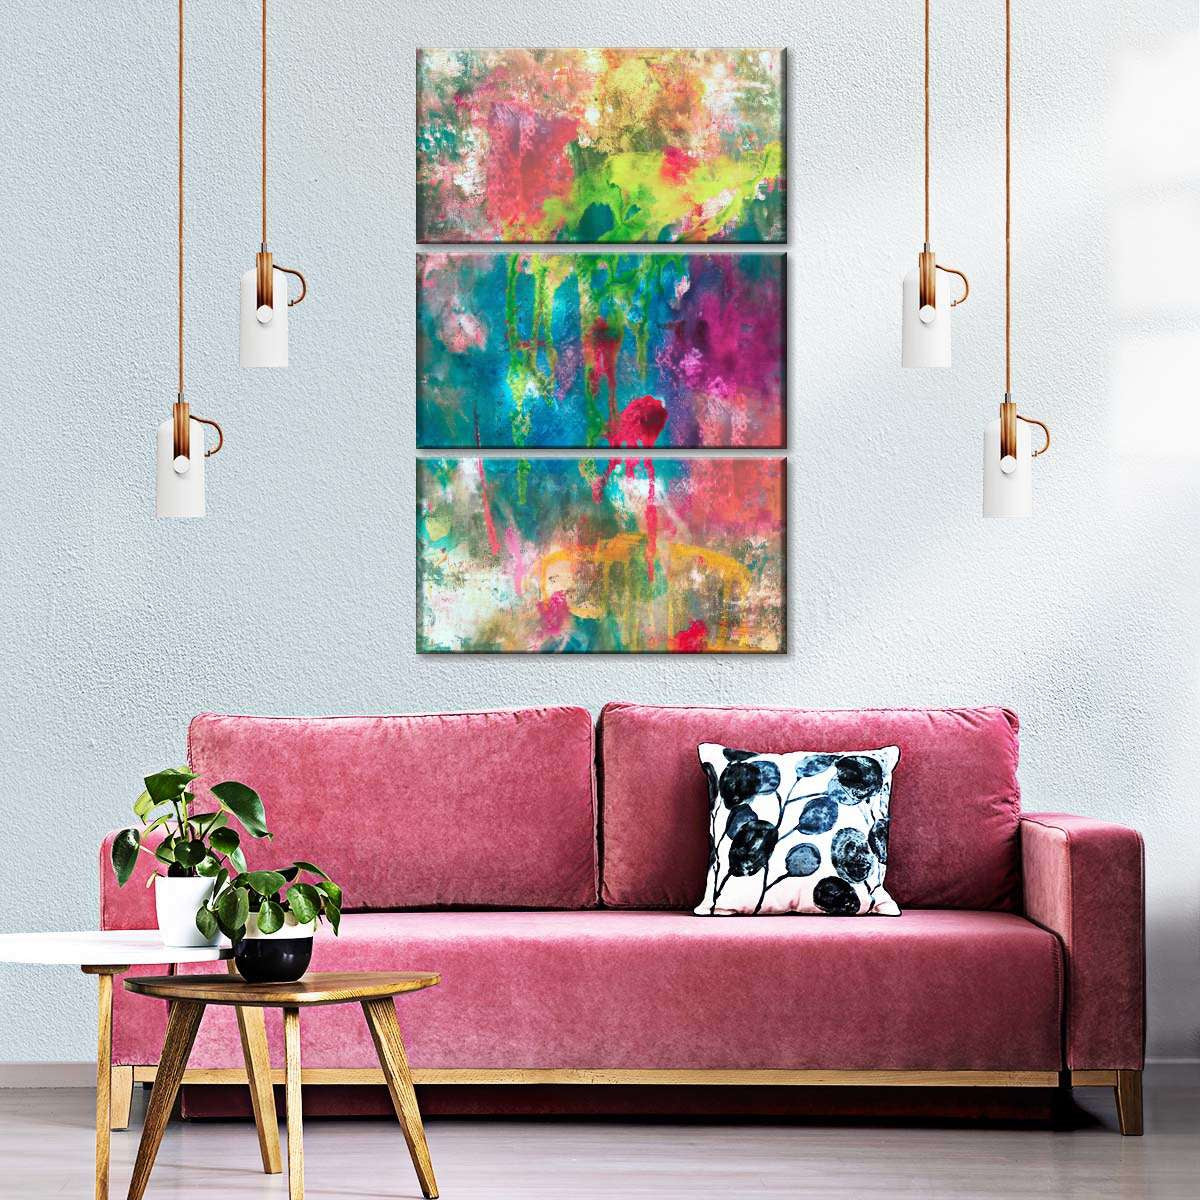 living room paintings ideas